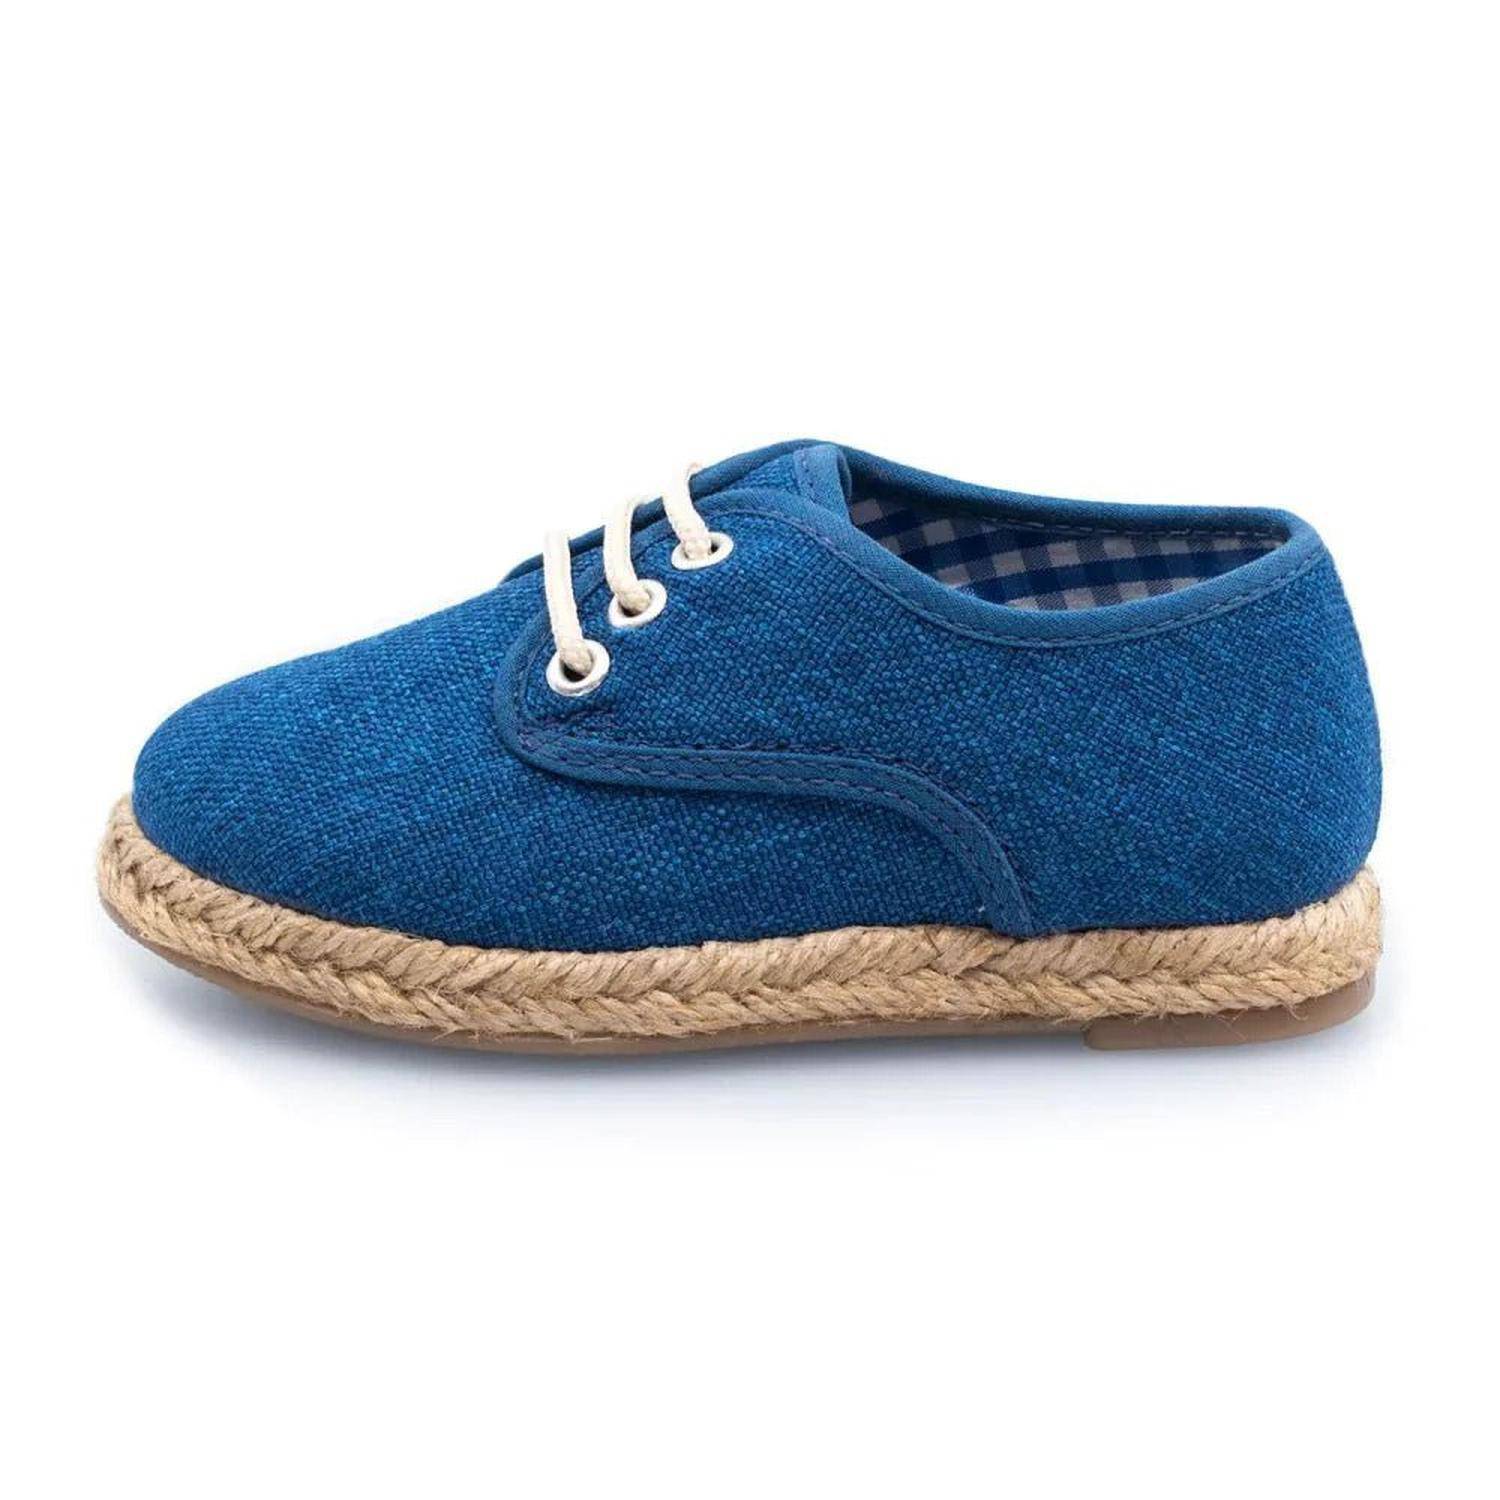 Zapatos Niños One-Piece Azul– PAPOS